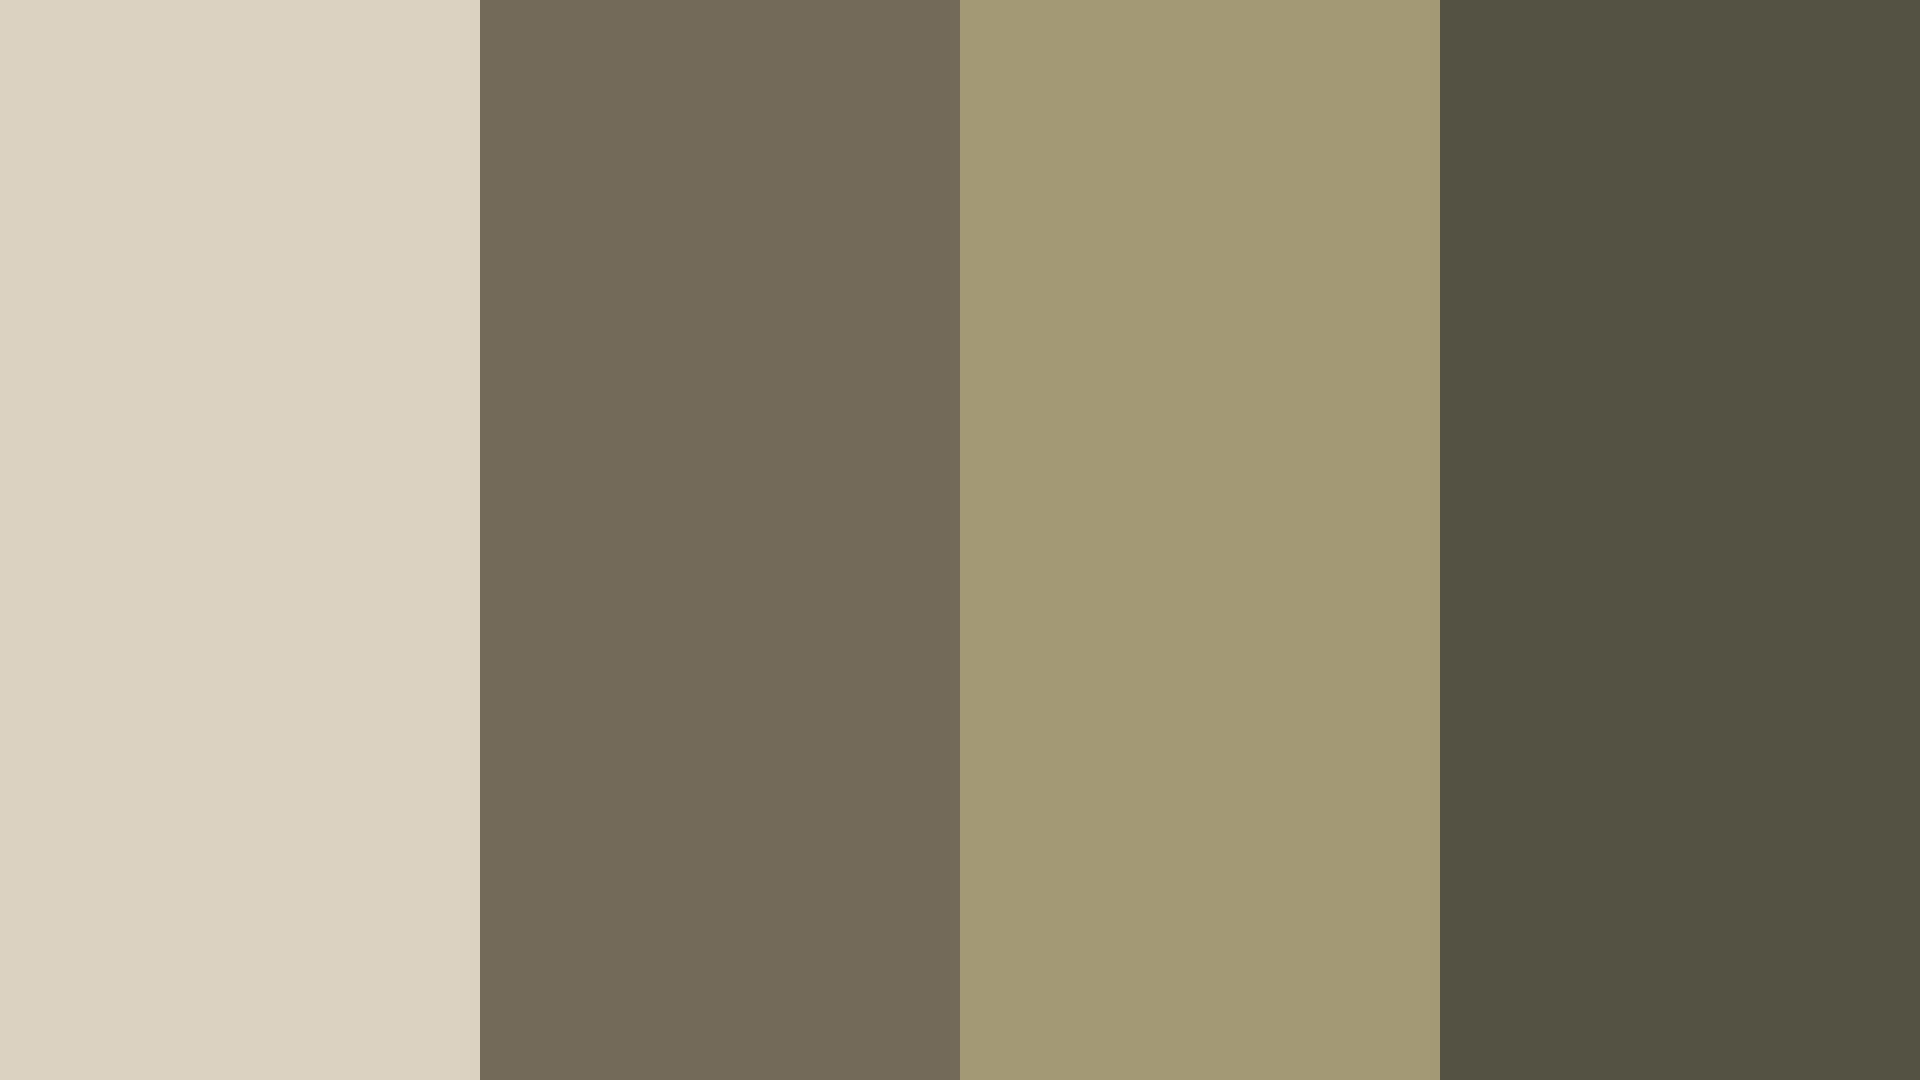 US Army Uniform Color Scheme Brown SchemeColor.com